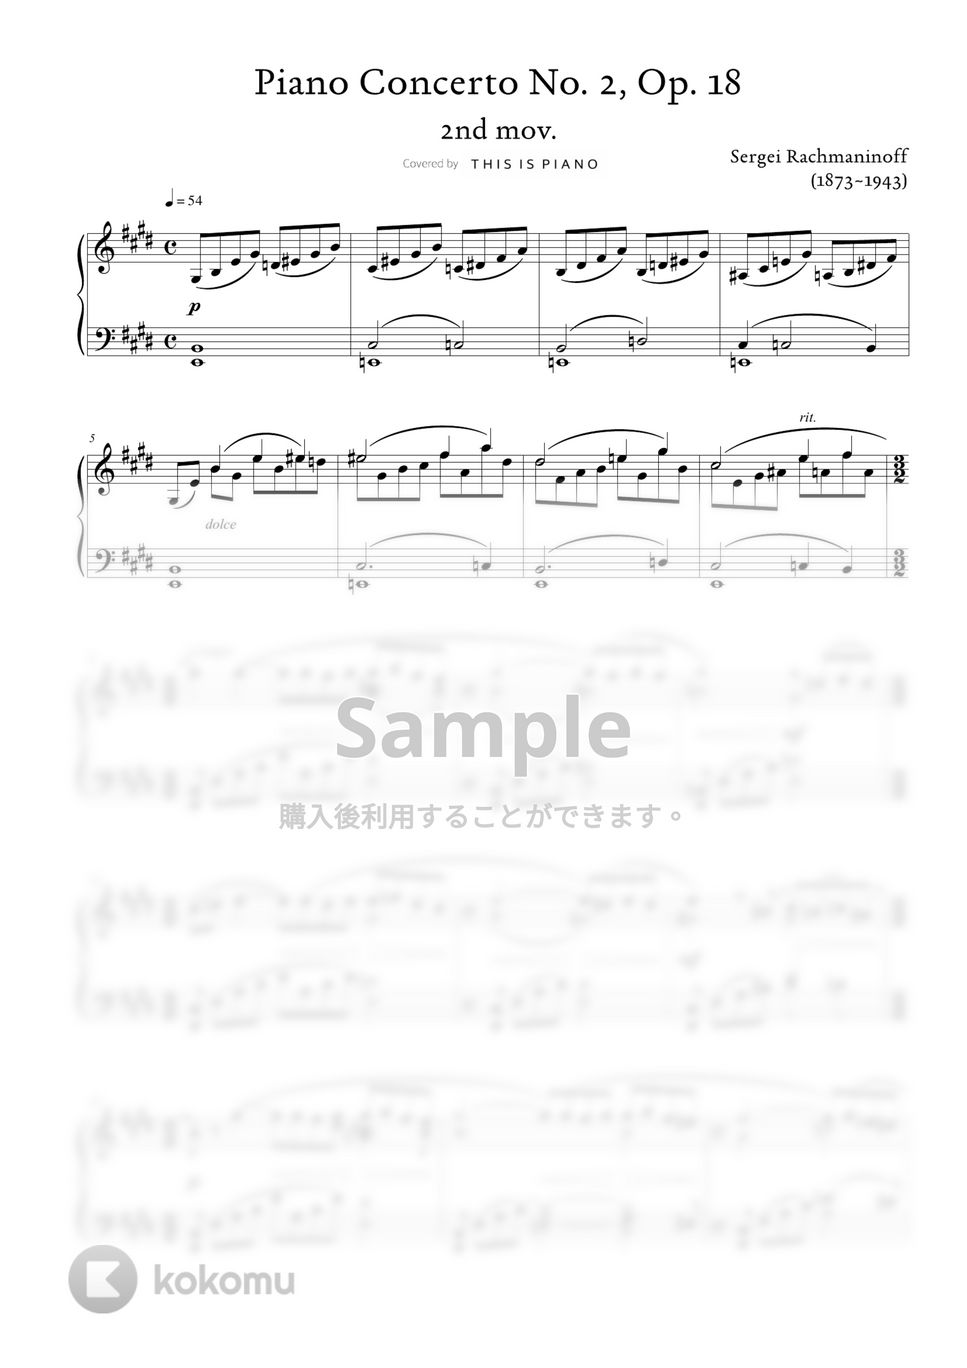 ラフマニノフ - ピアノ協奏曲第2番第2楽章 by THIS IS PIANO